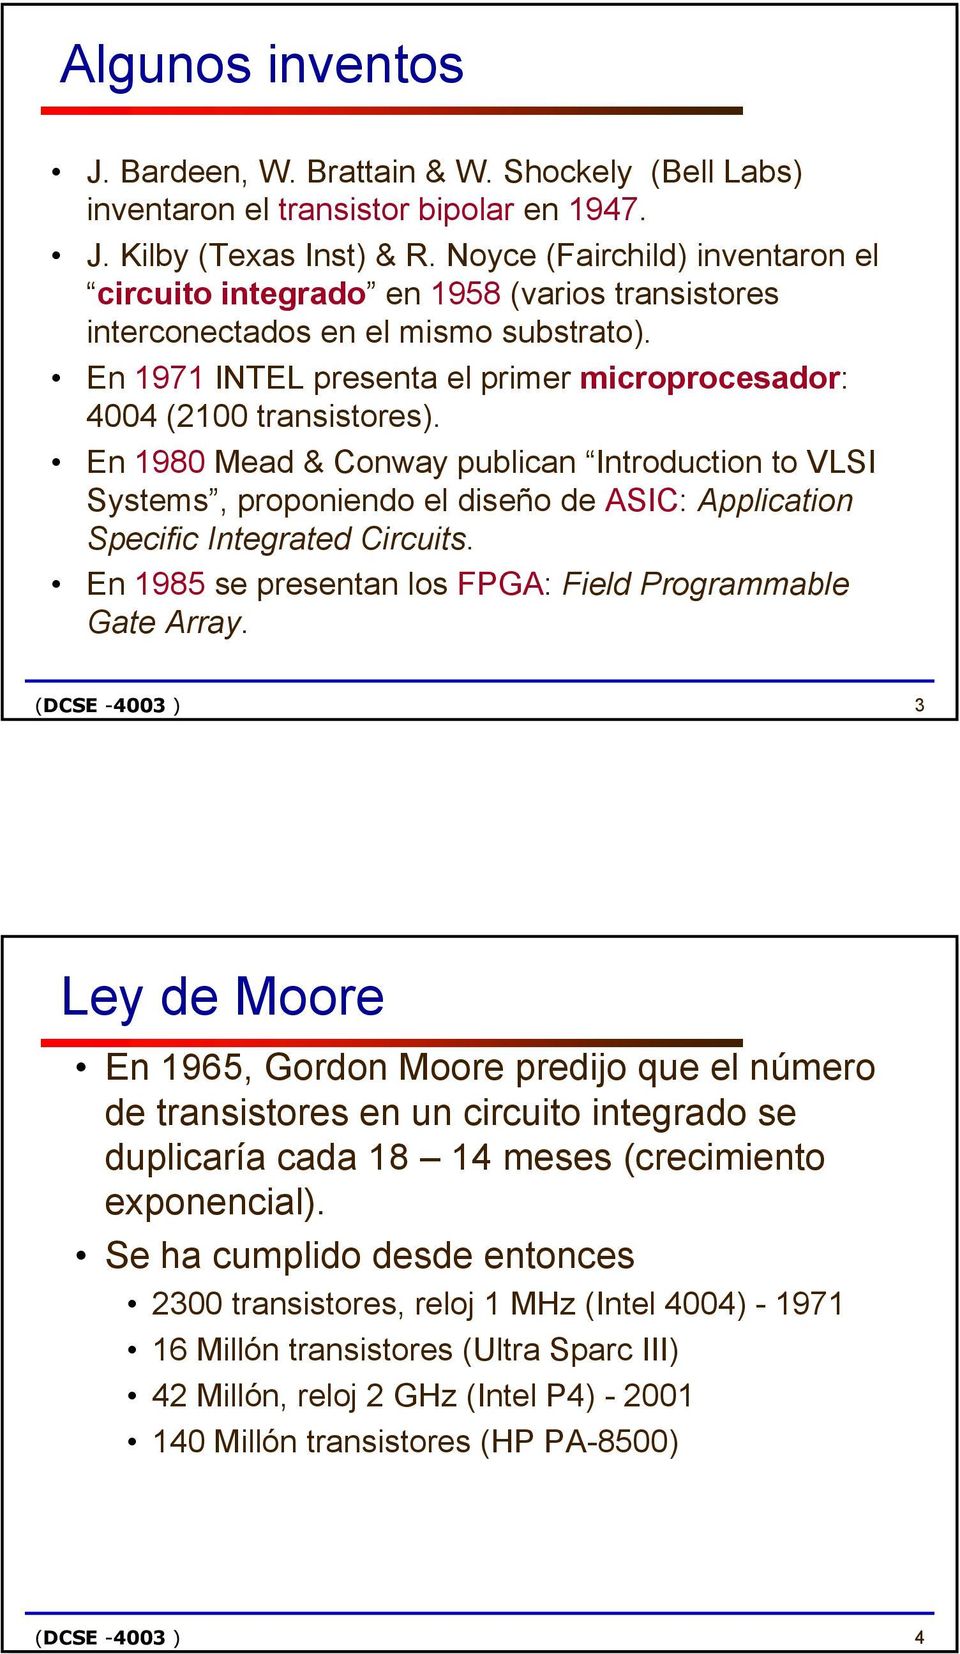 En 1980 Mead & Conway publican Introduction to VLSI Systems, proponiendo el diseño de ASIC: Application Specific Integrated Circuits. En 1985 se presentan los FPGA: Field Programmable Gate Array.